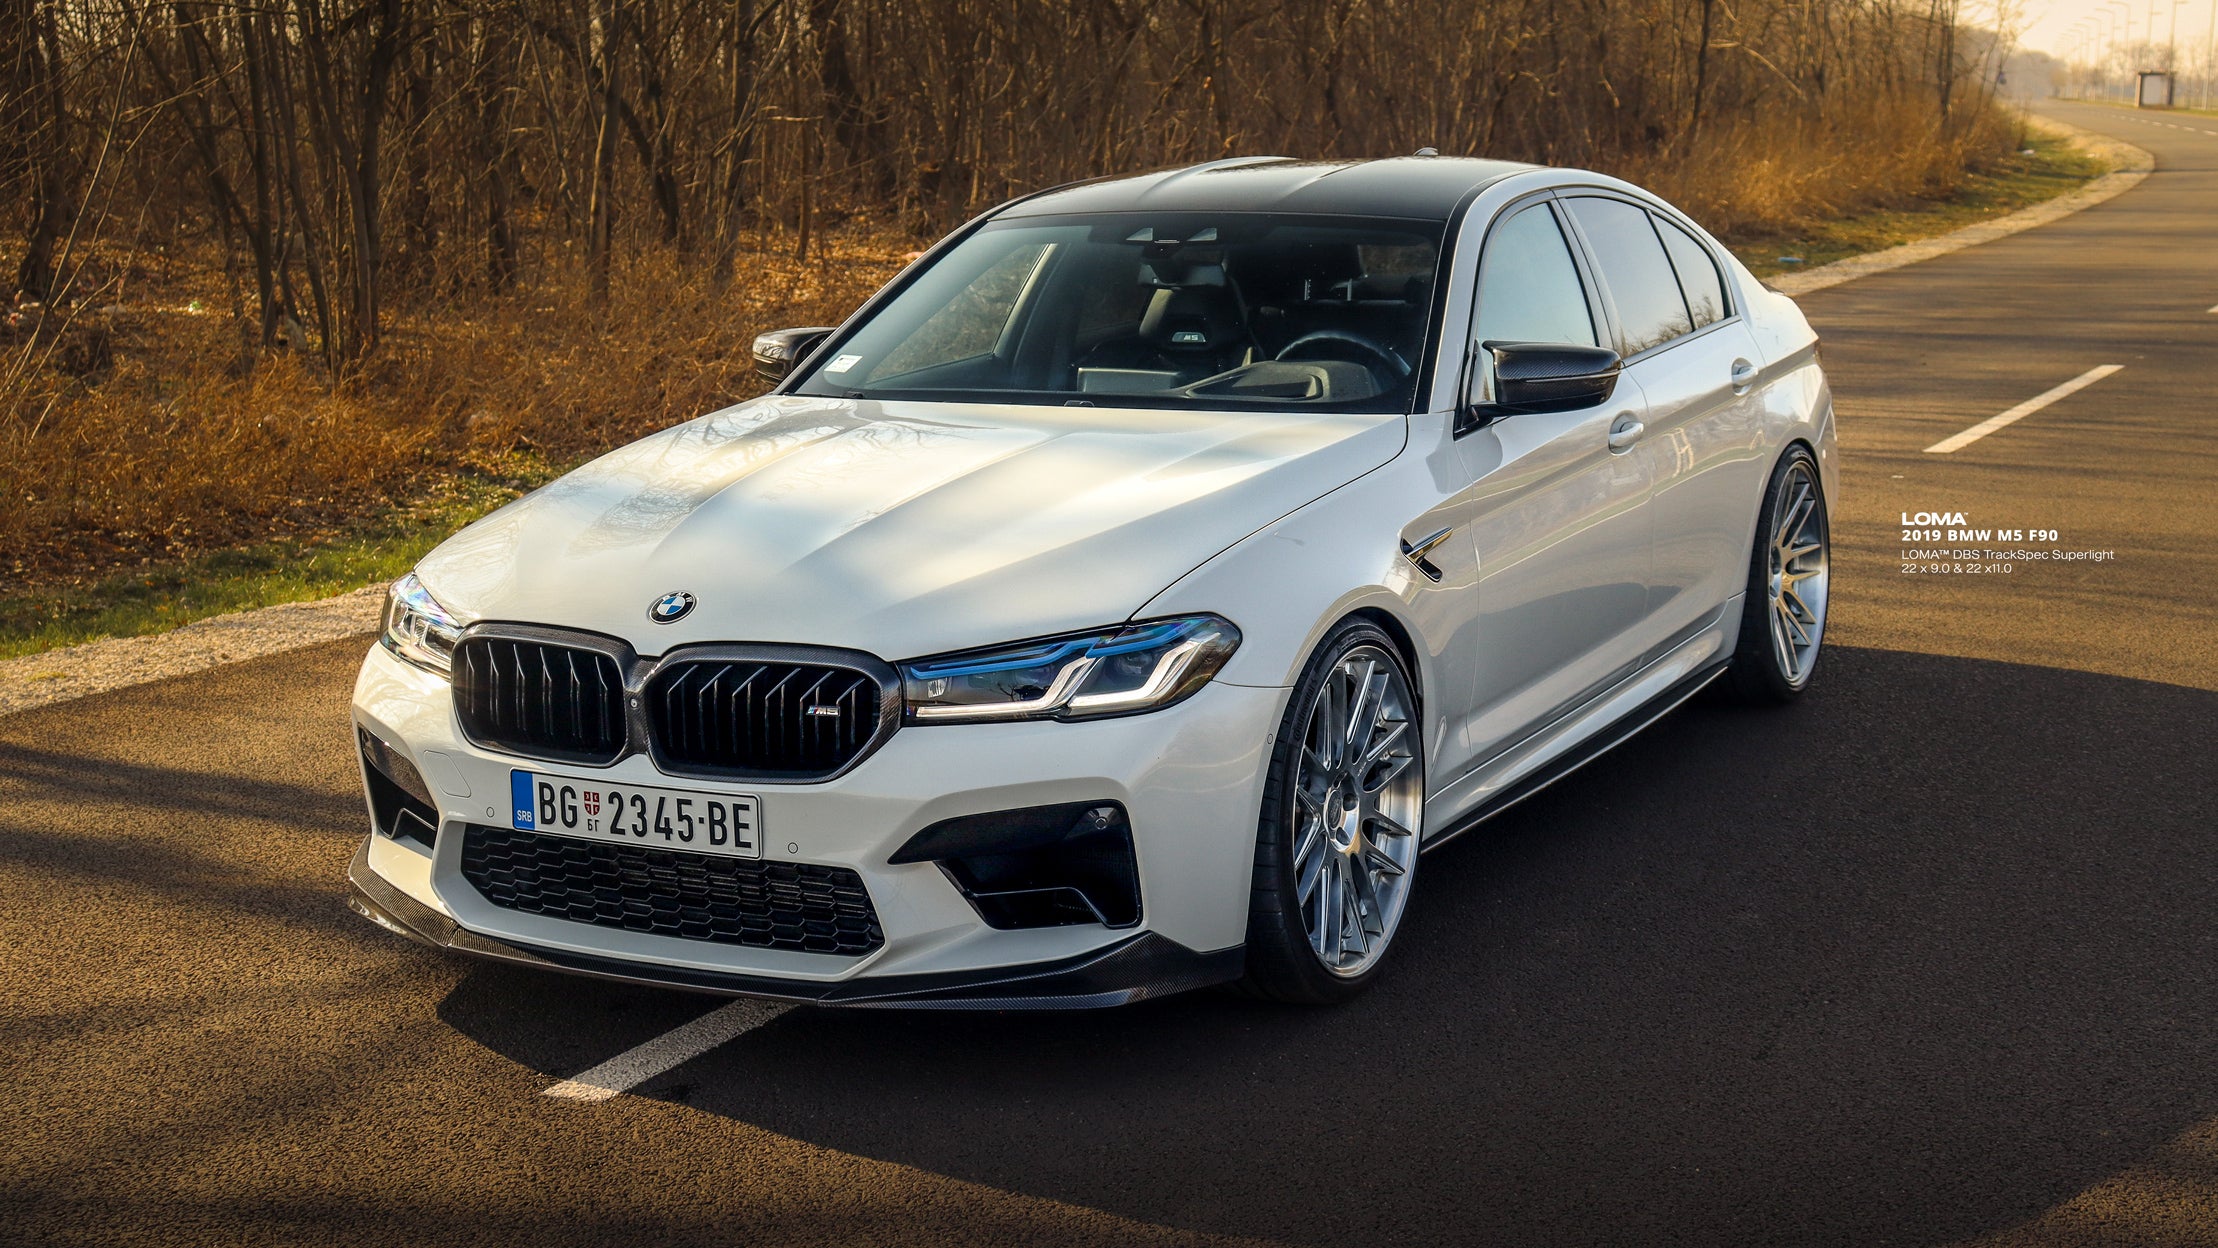 2019-BMW-M5-F90-on-LOMA-DBS-TrackSpec-Custom-Forged-Alloy-Wheels-7